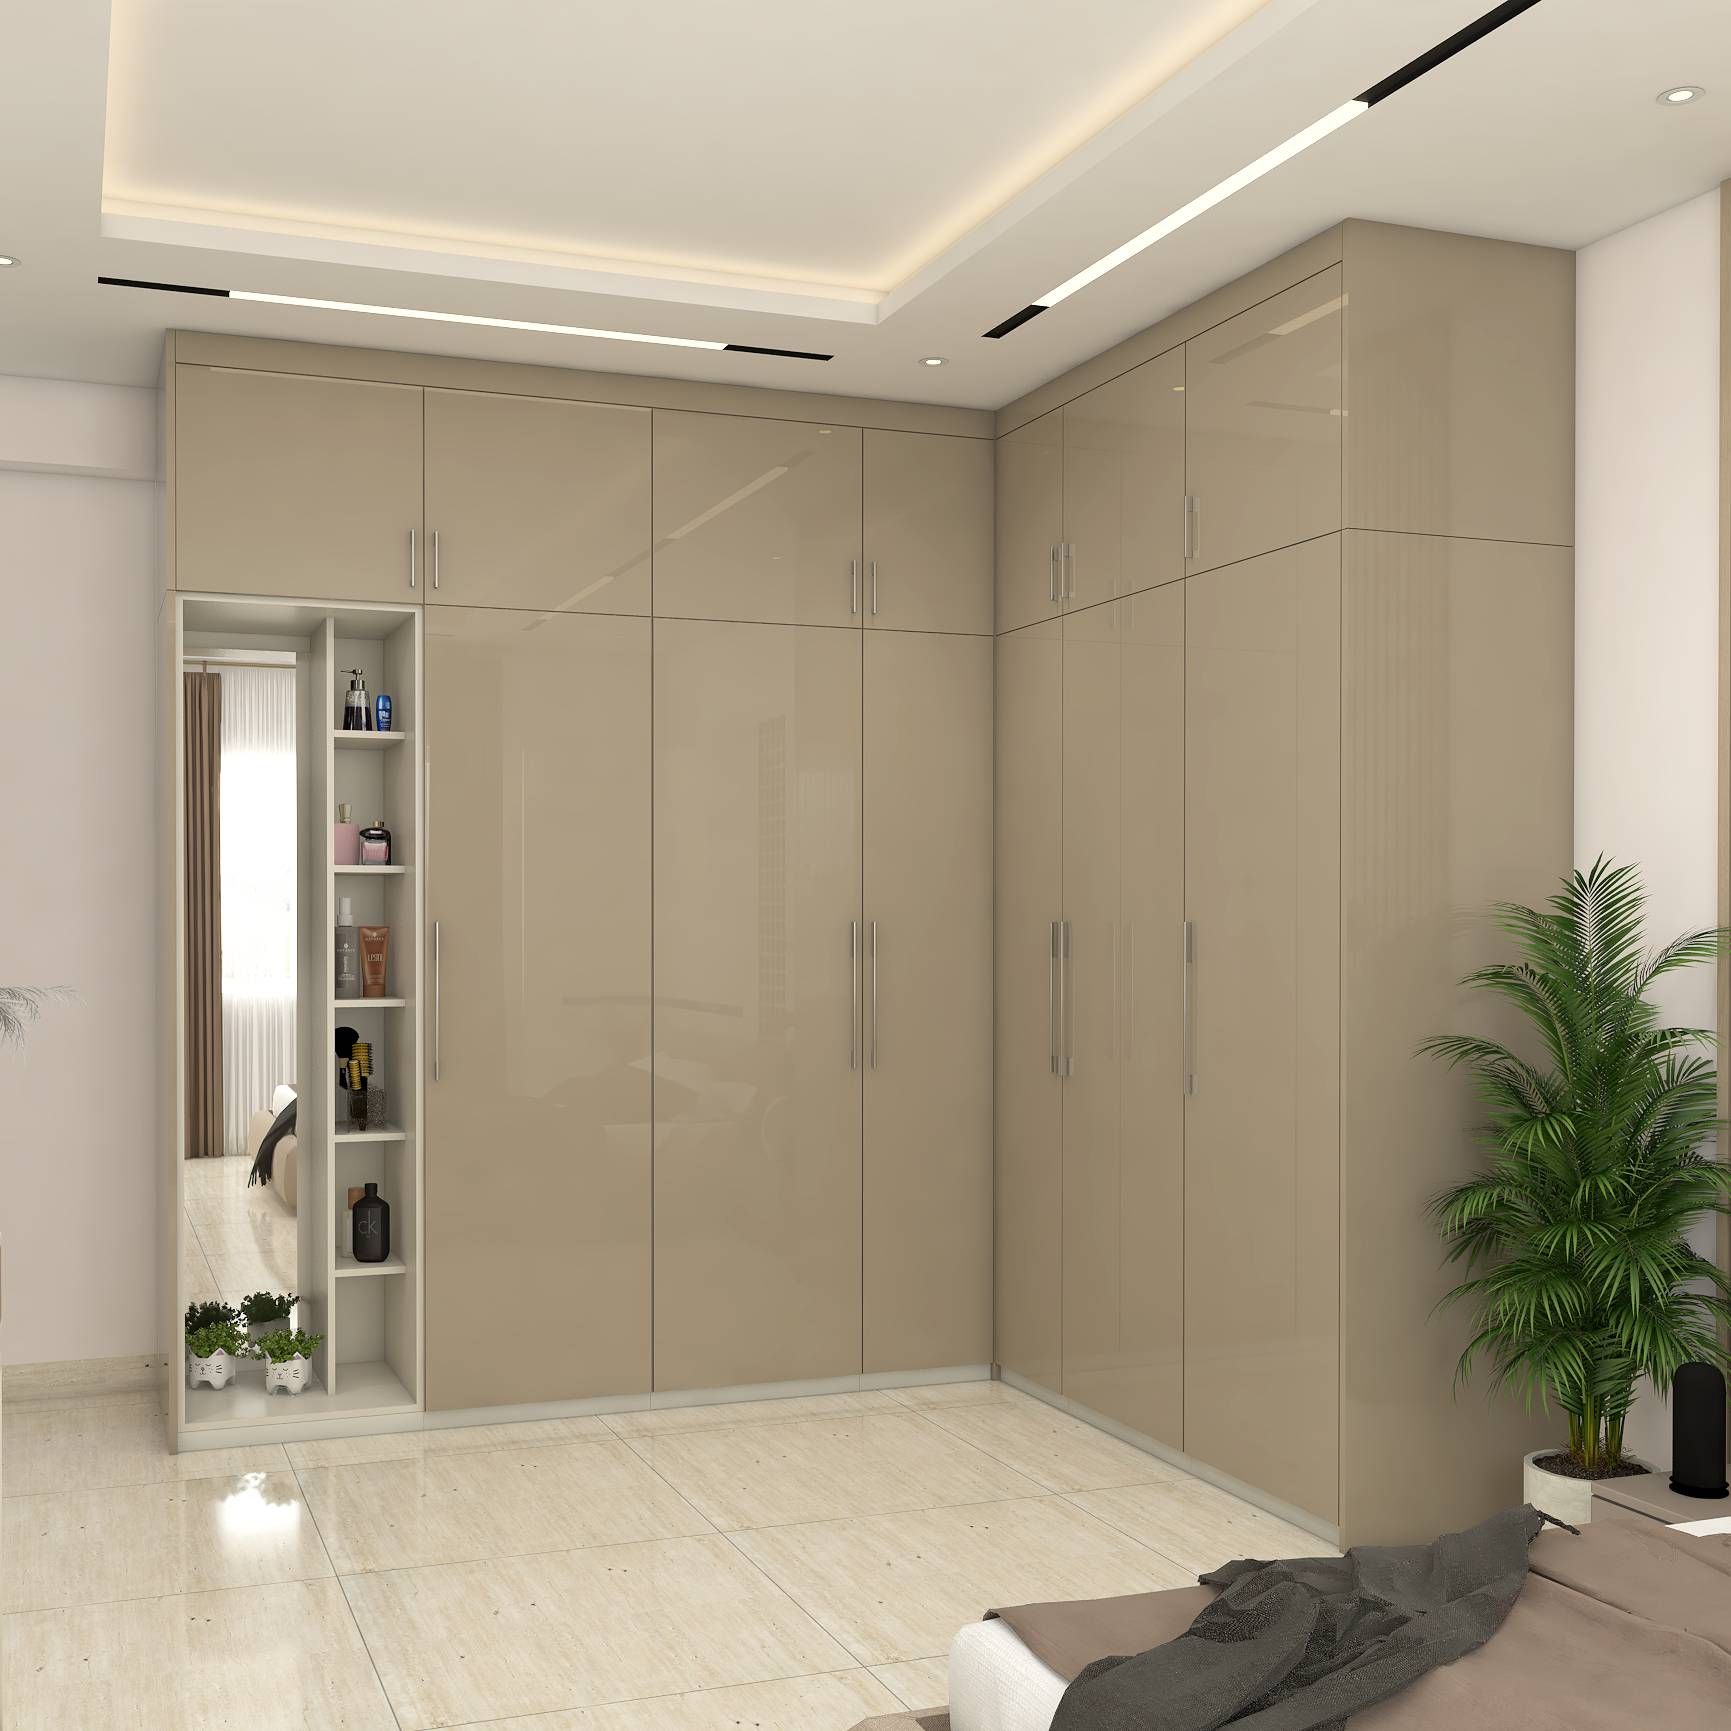 Modern 6-Door Wardrobe Design With A Mirror And Loft Storage